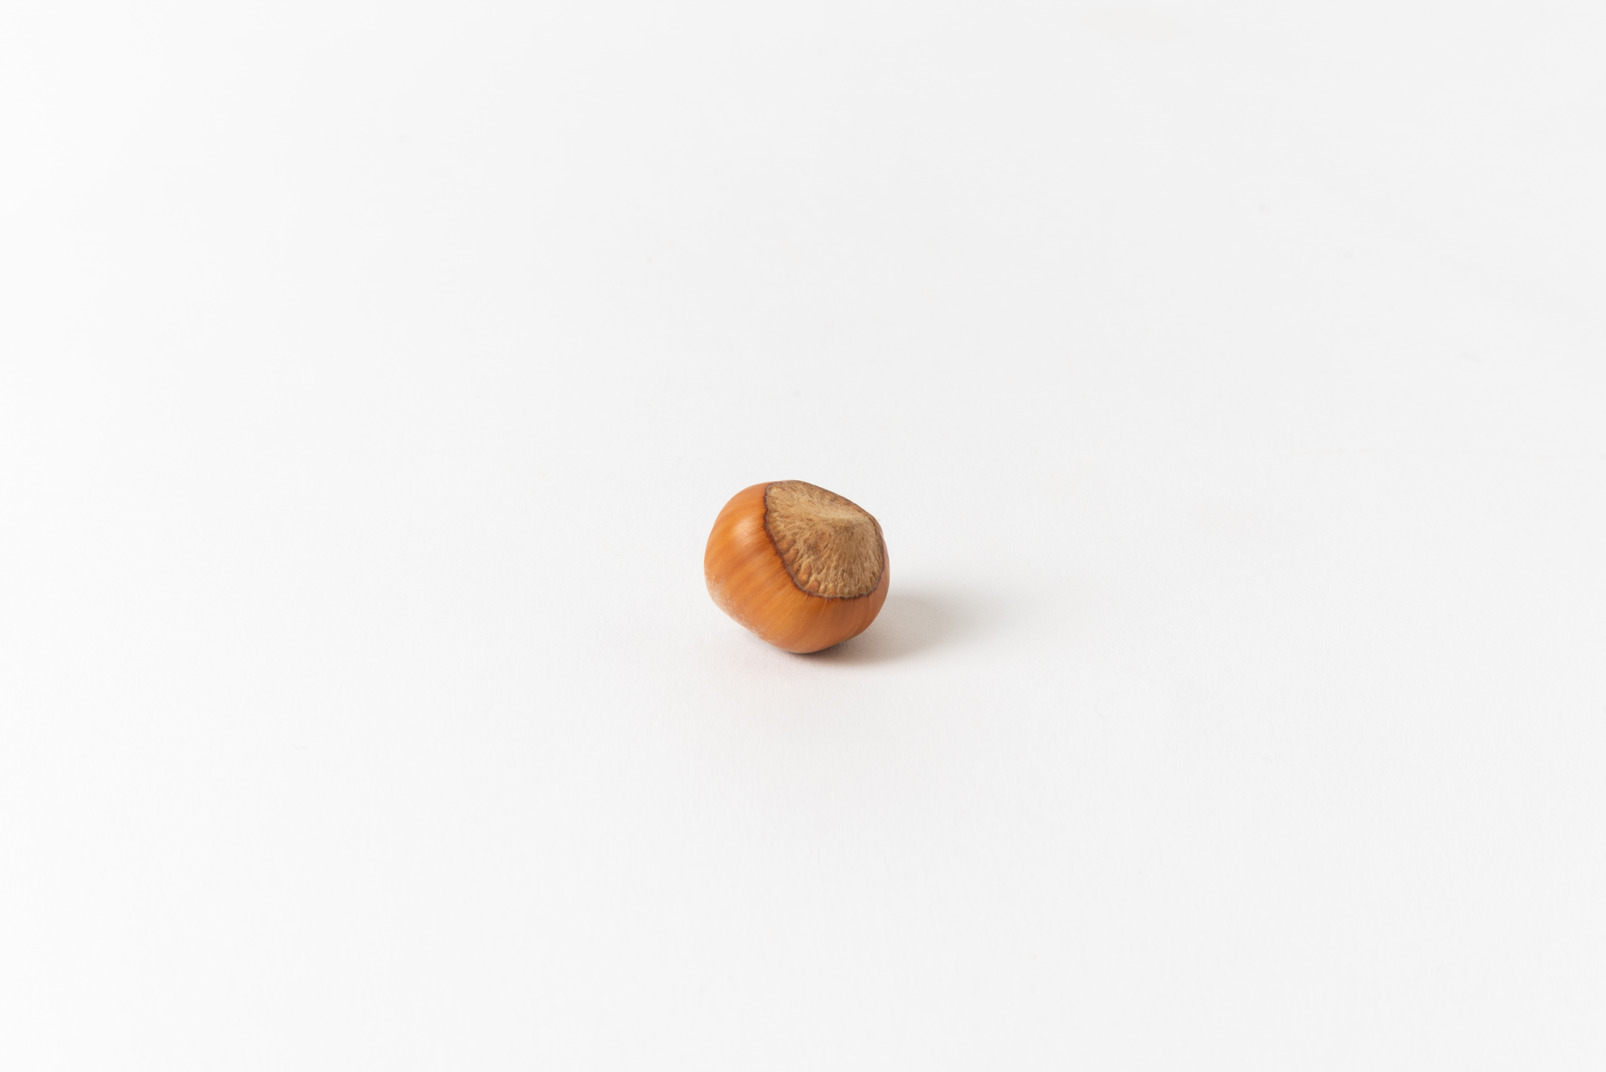 Single hazelnut in a shell